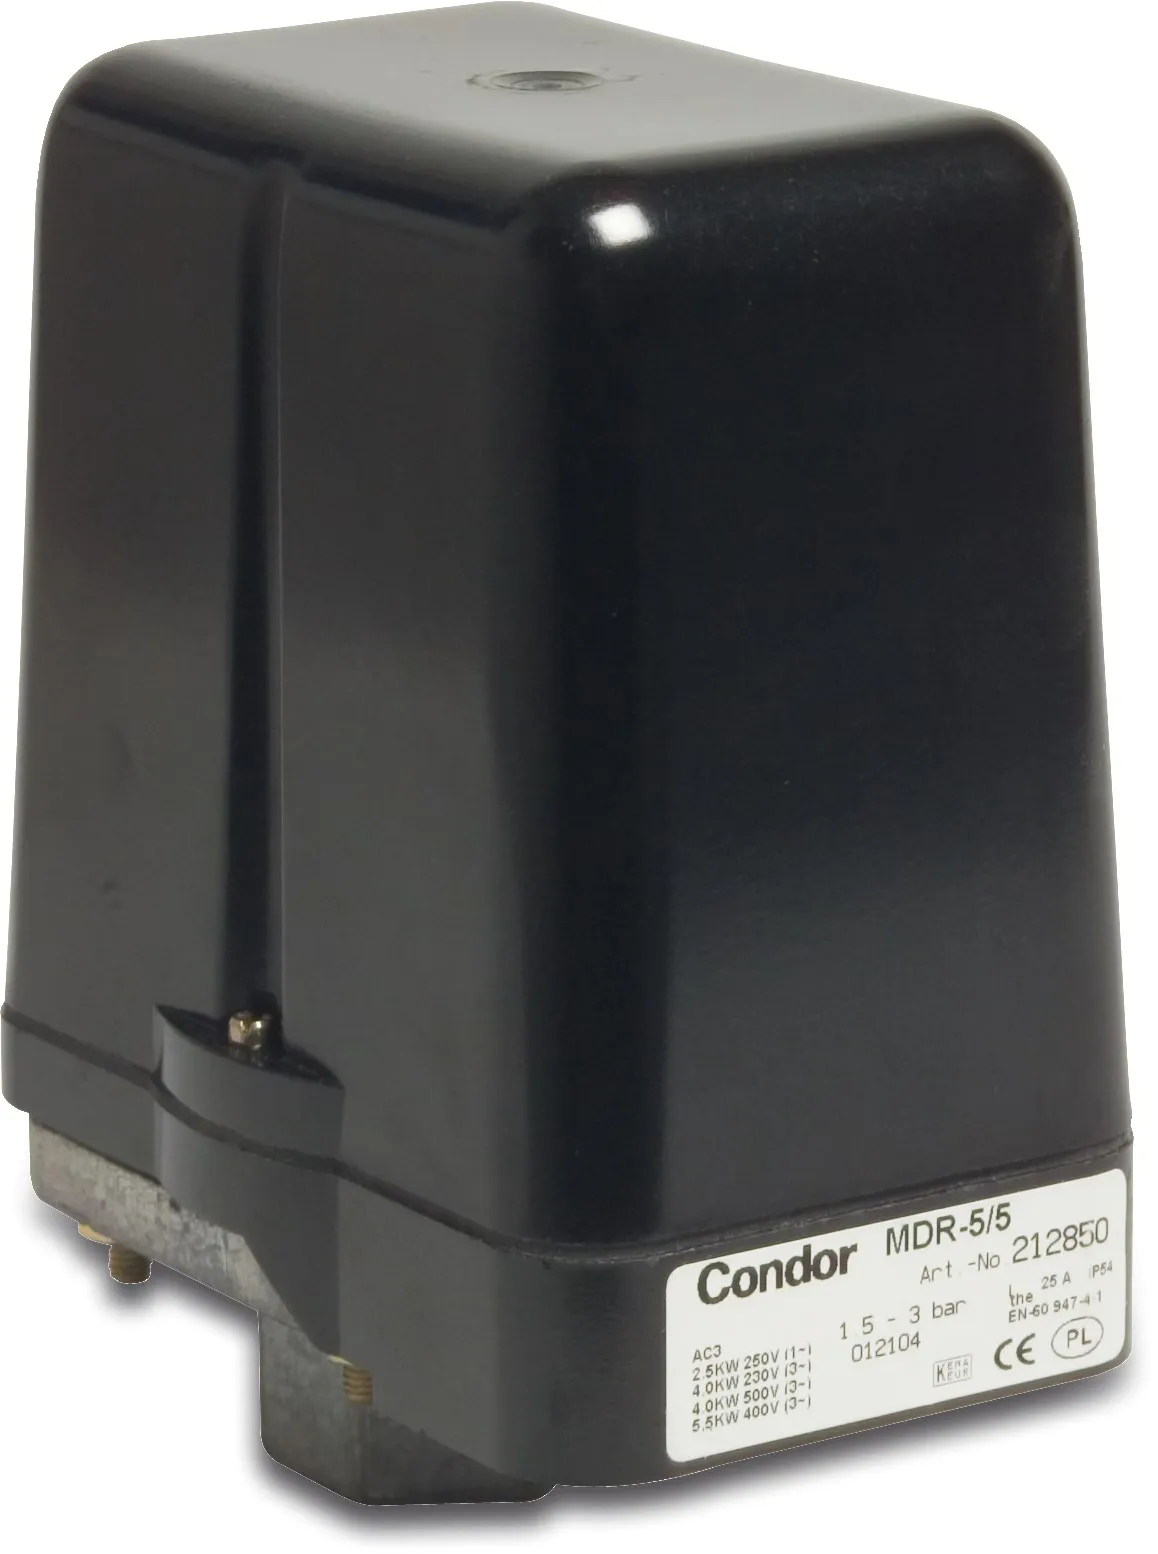 Condor Trykafbryder 1/2" indvendig gevind 25A 230/400VAC type MDR 5-5